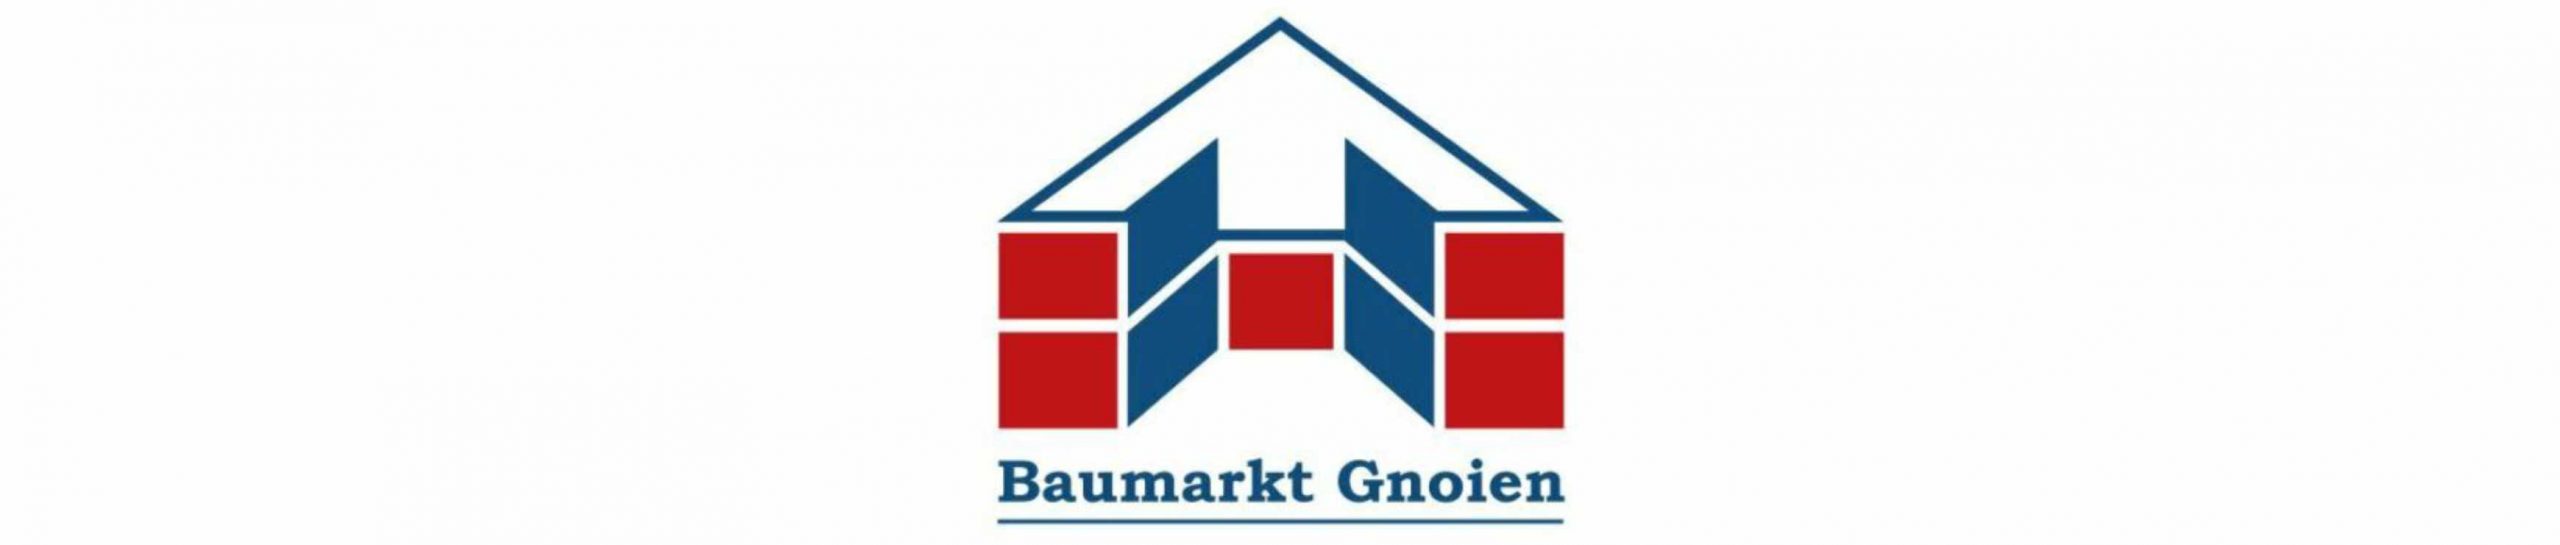 Baumarkt Gnoien GmbH & Co. KG - Gnoien